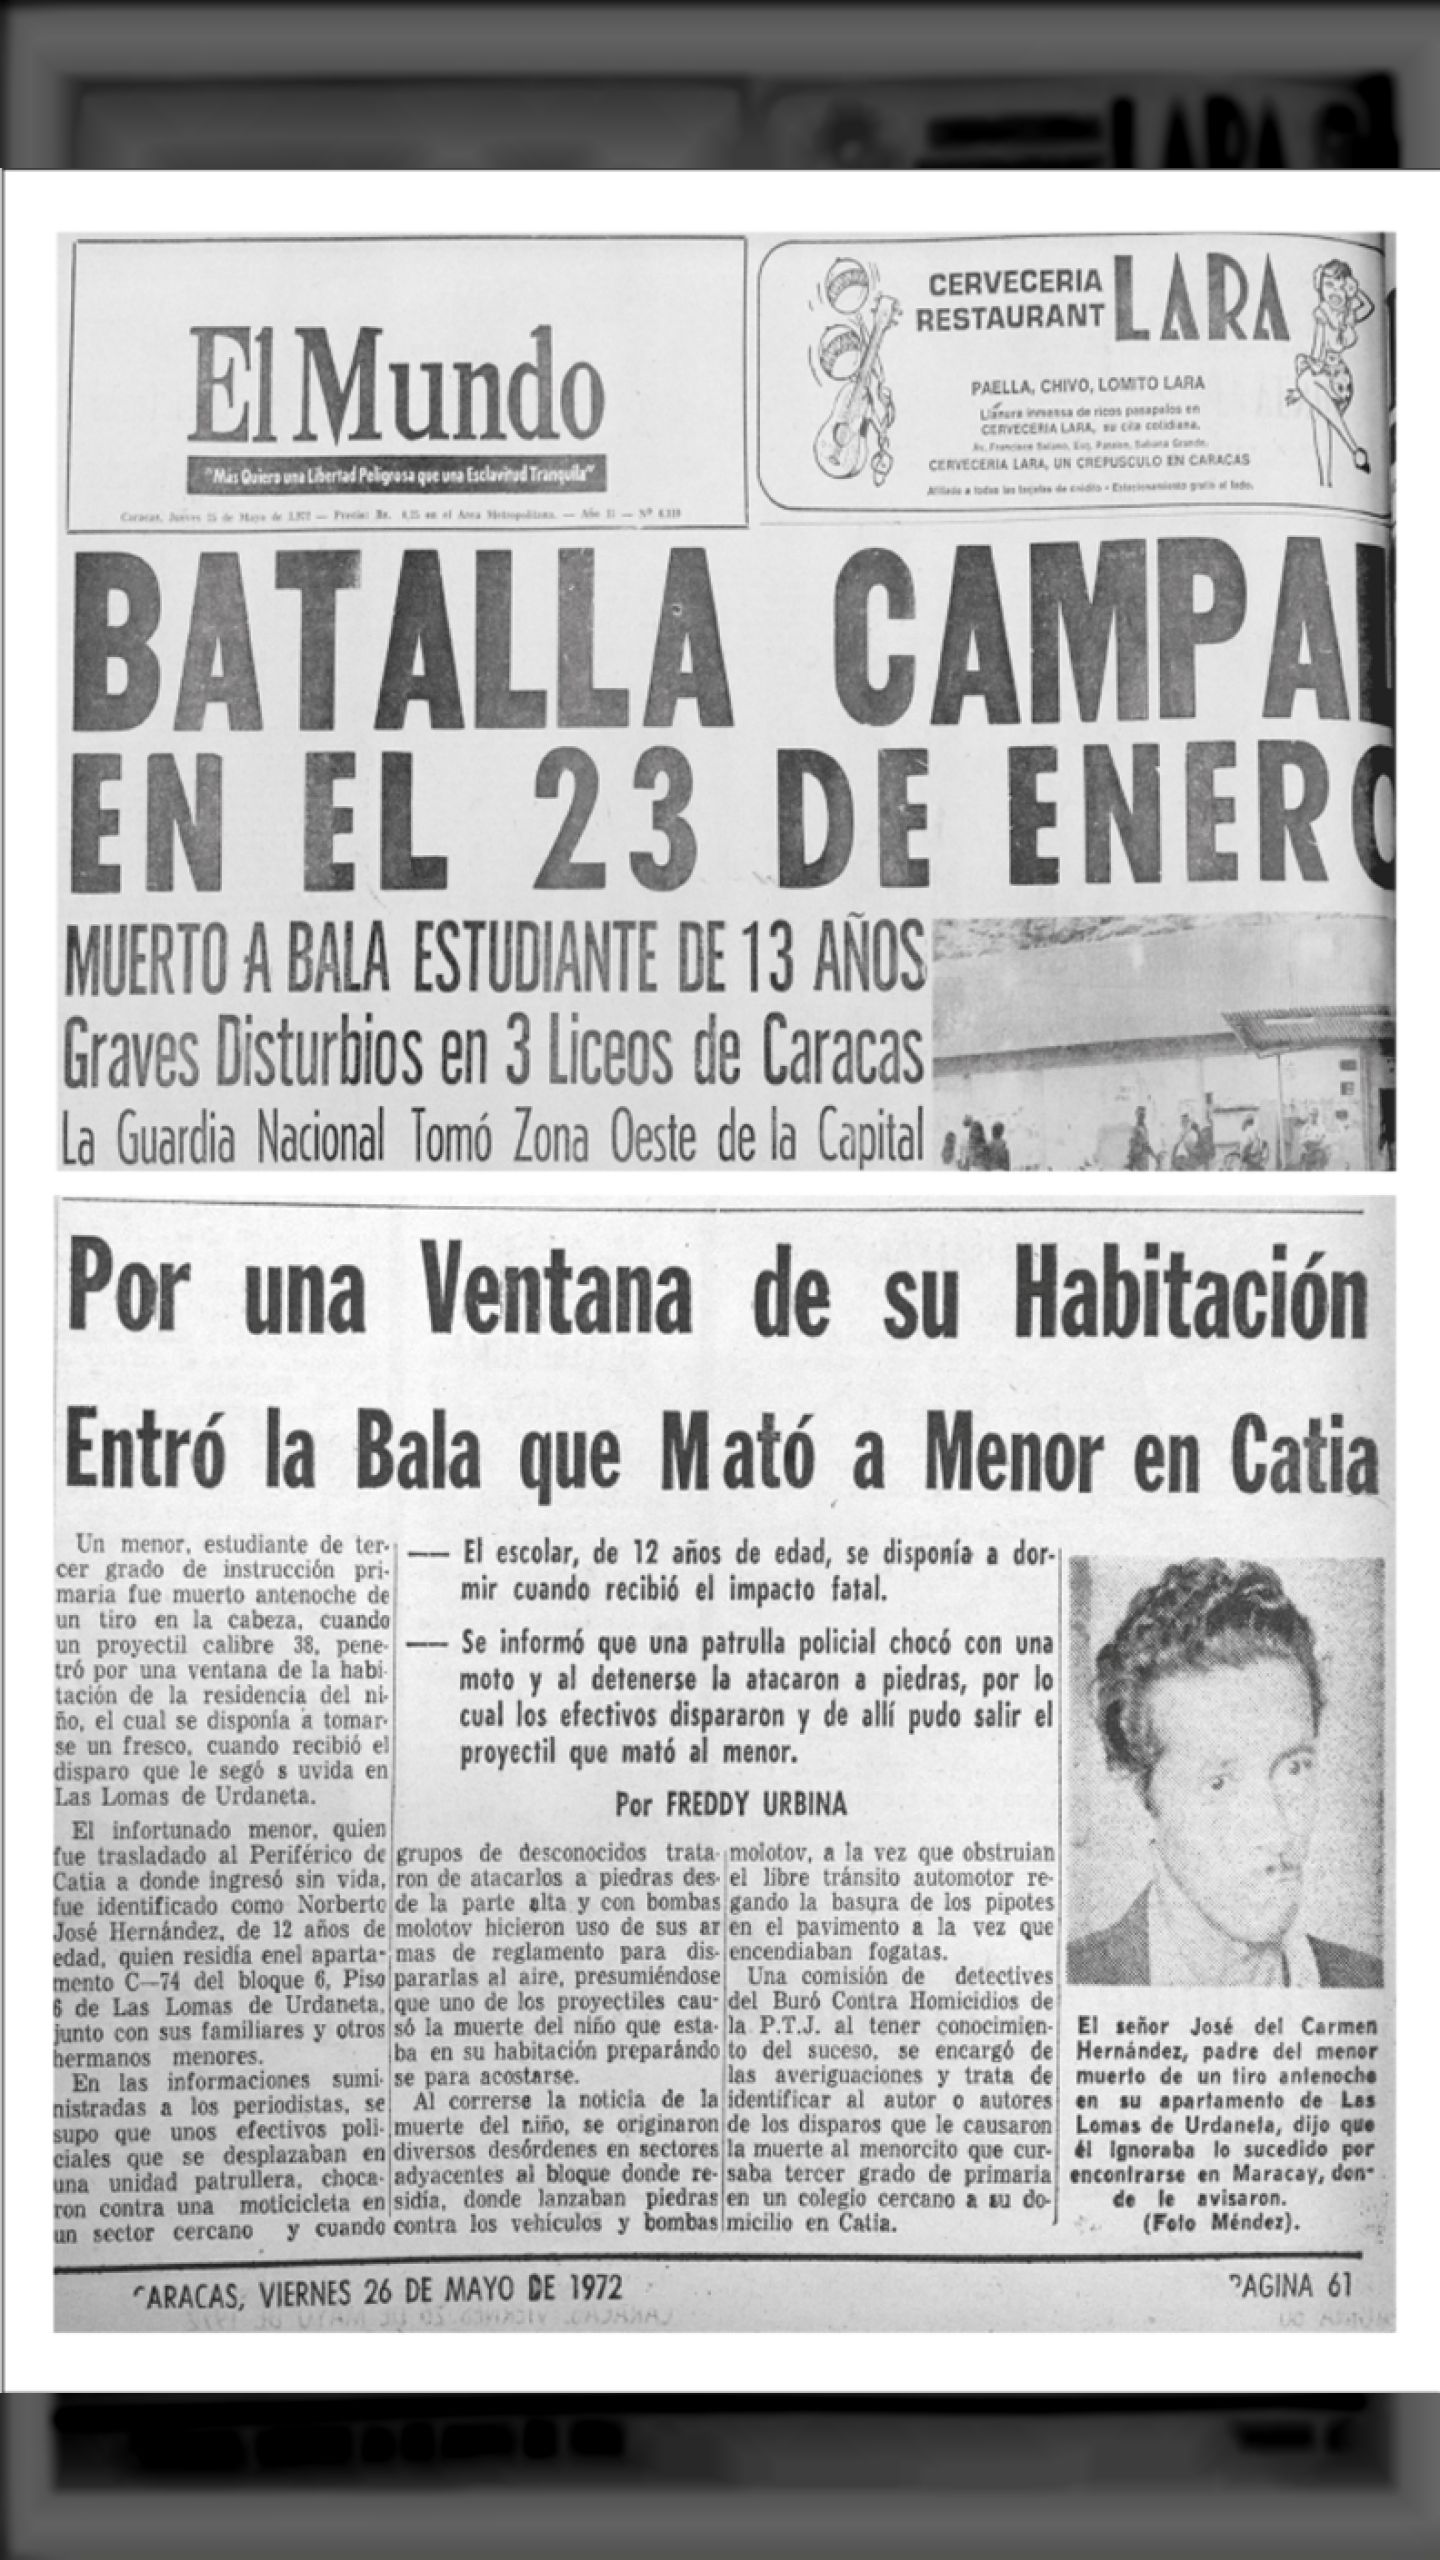 BATALLA CAMPAL EN EL 23 DE ENERO (24 y 25 de mayo 1972 El Mundo-Últimas Noticias)